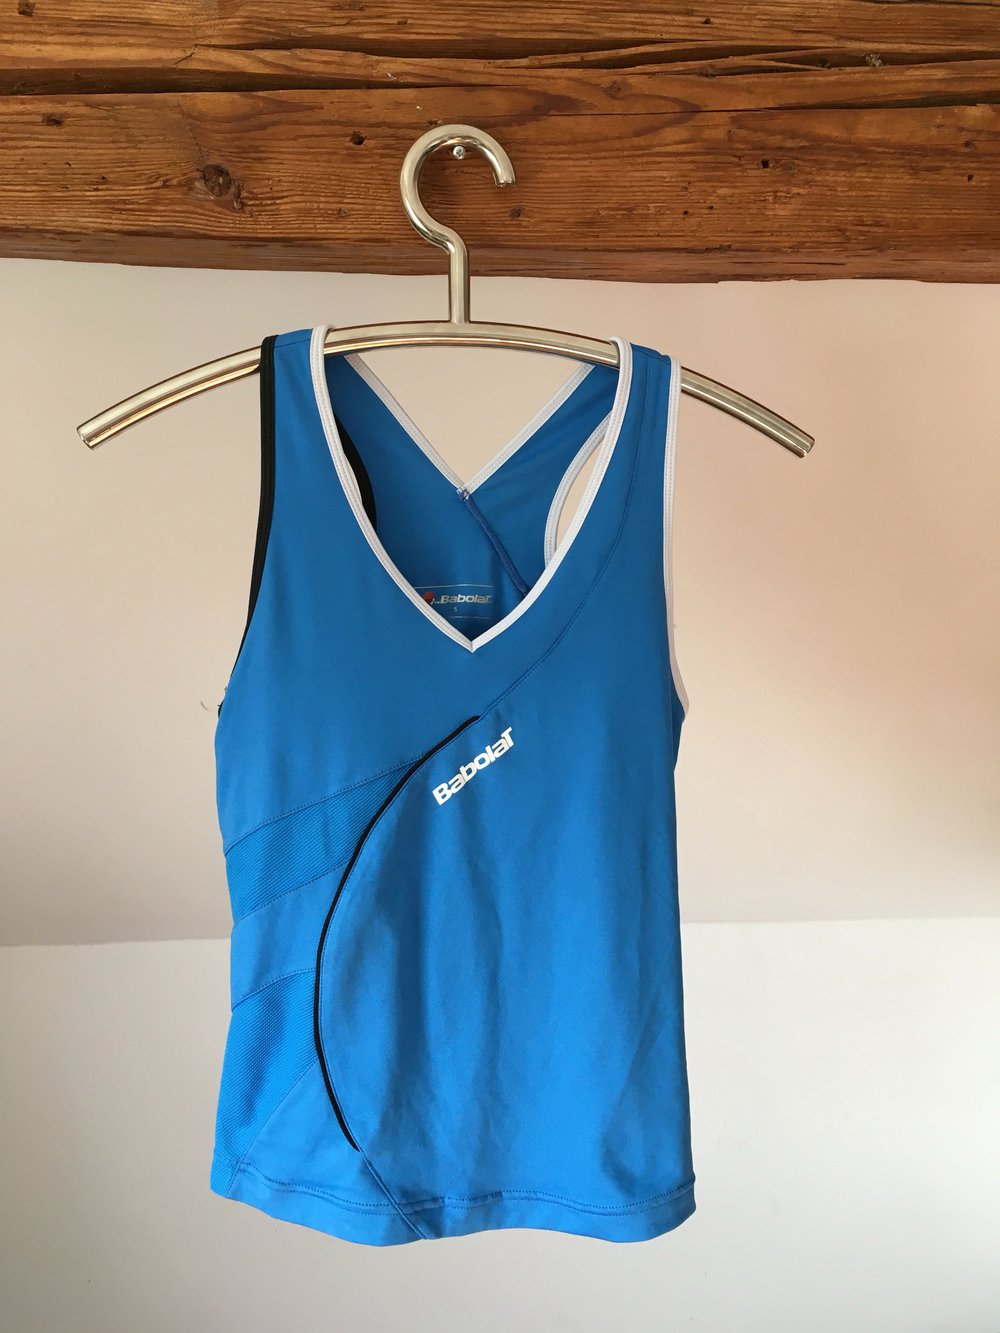 Babolat Sporttop S 36 38 blau Tennis top Fitness Shirt gym Oberteil weiß integrierter BH 